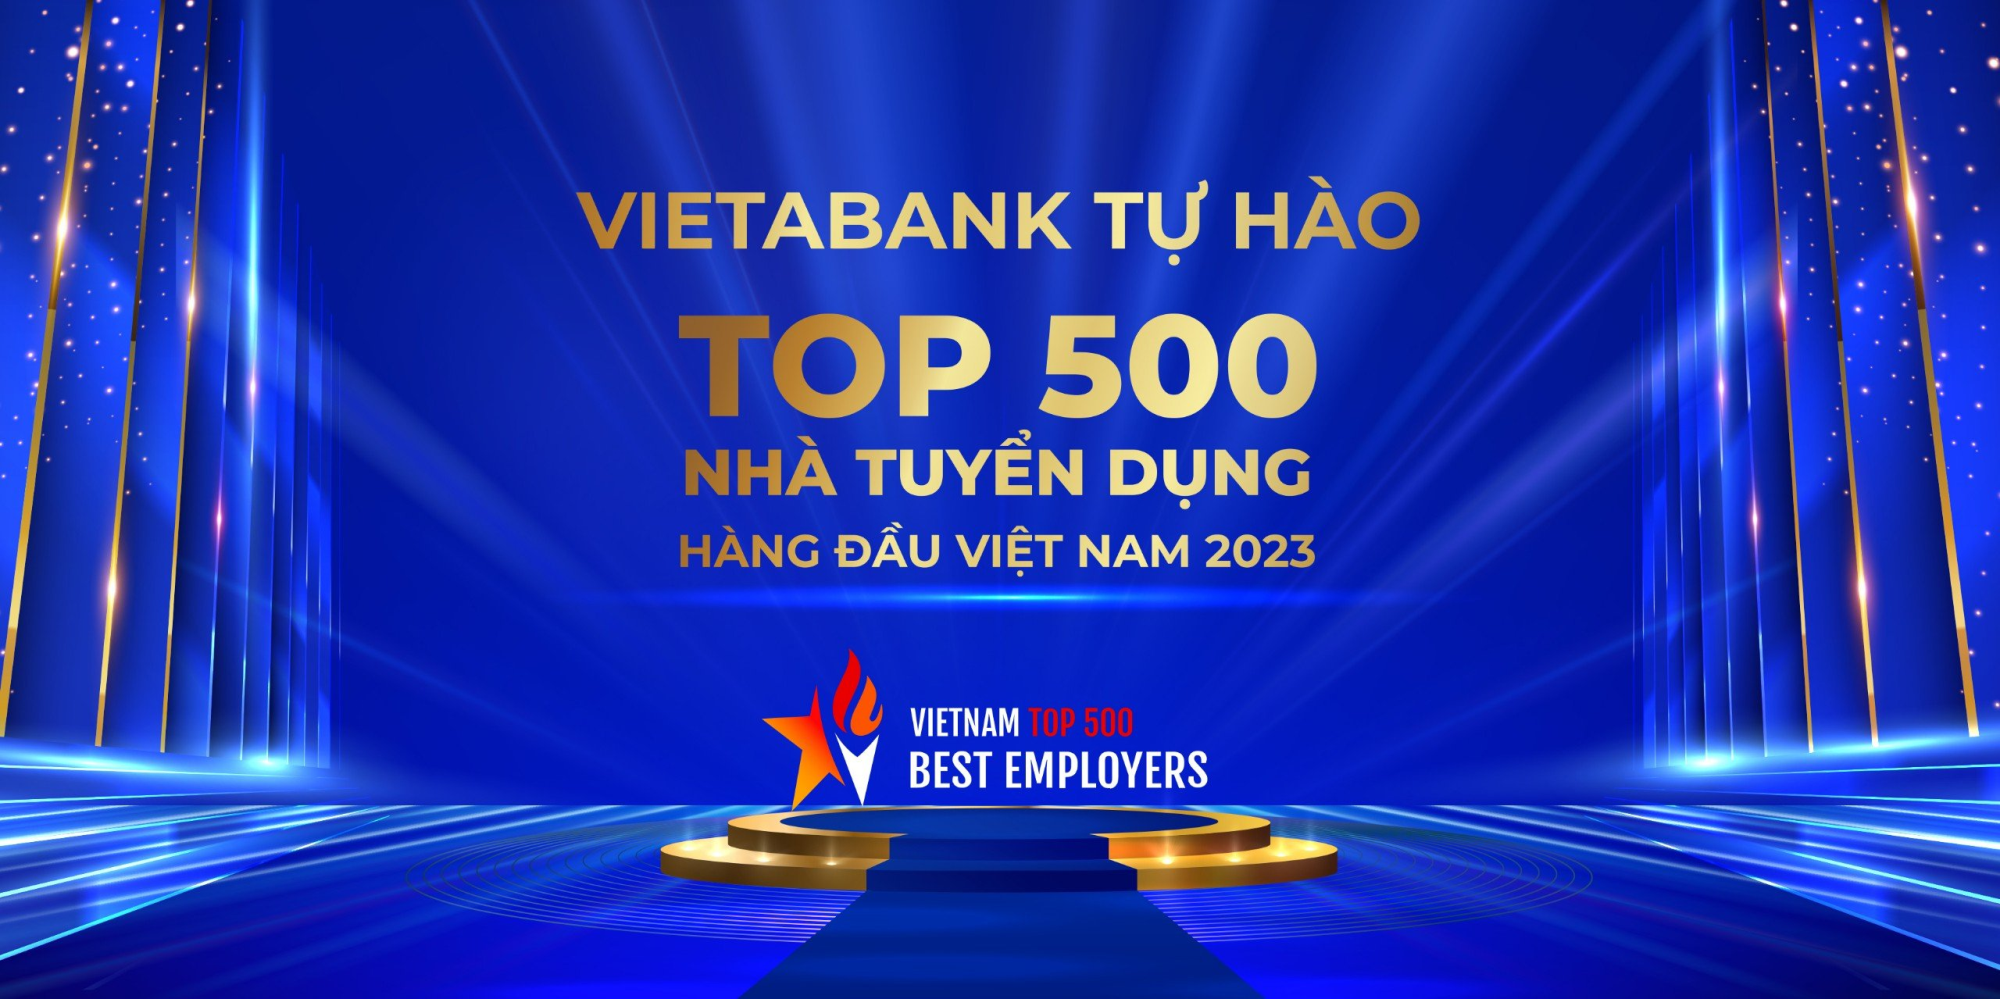 VietABank tự hào được vinh danh Top 500 nhà tuyển dụng hàng đầu Việt Nam năm 2023